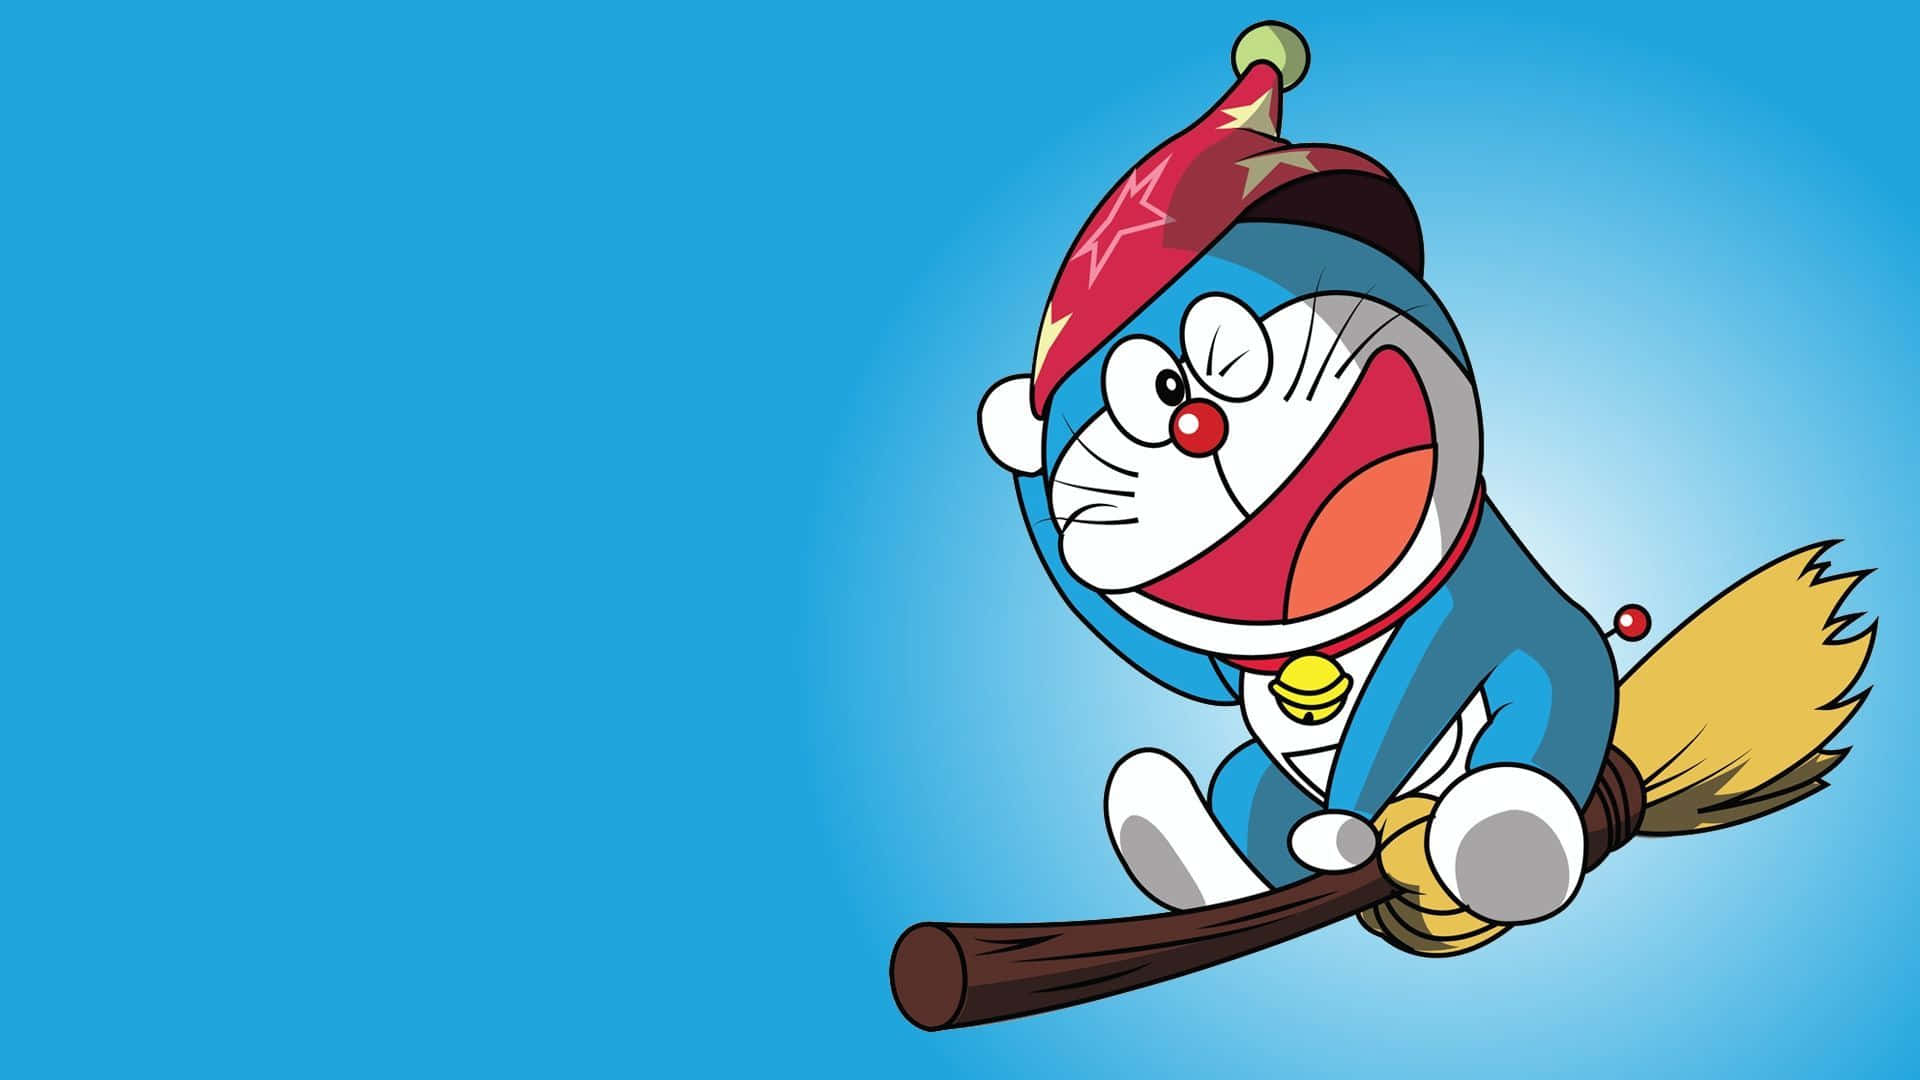 Eladorable Gato Robot Doraemon, Encargado De Ayudar A Nobita En Sus Aventuras.